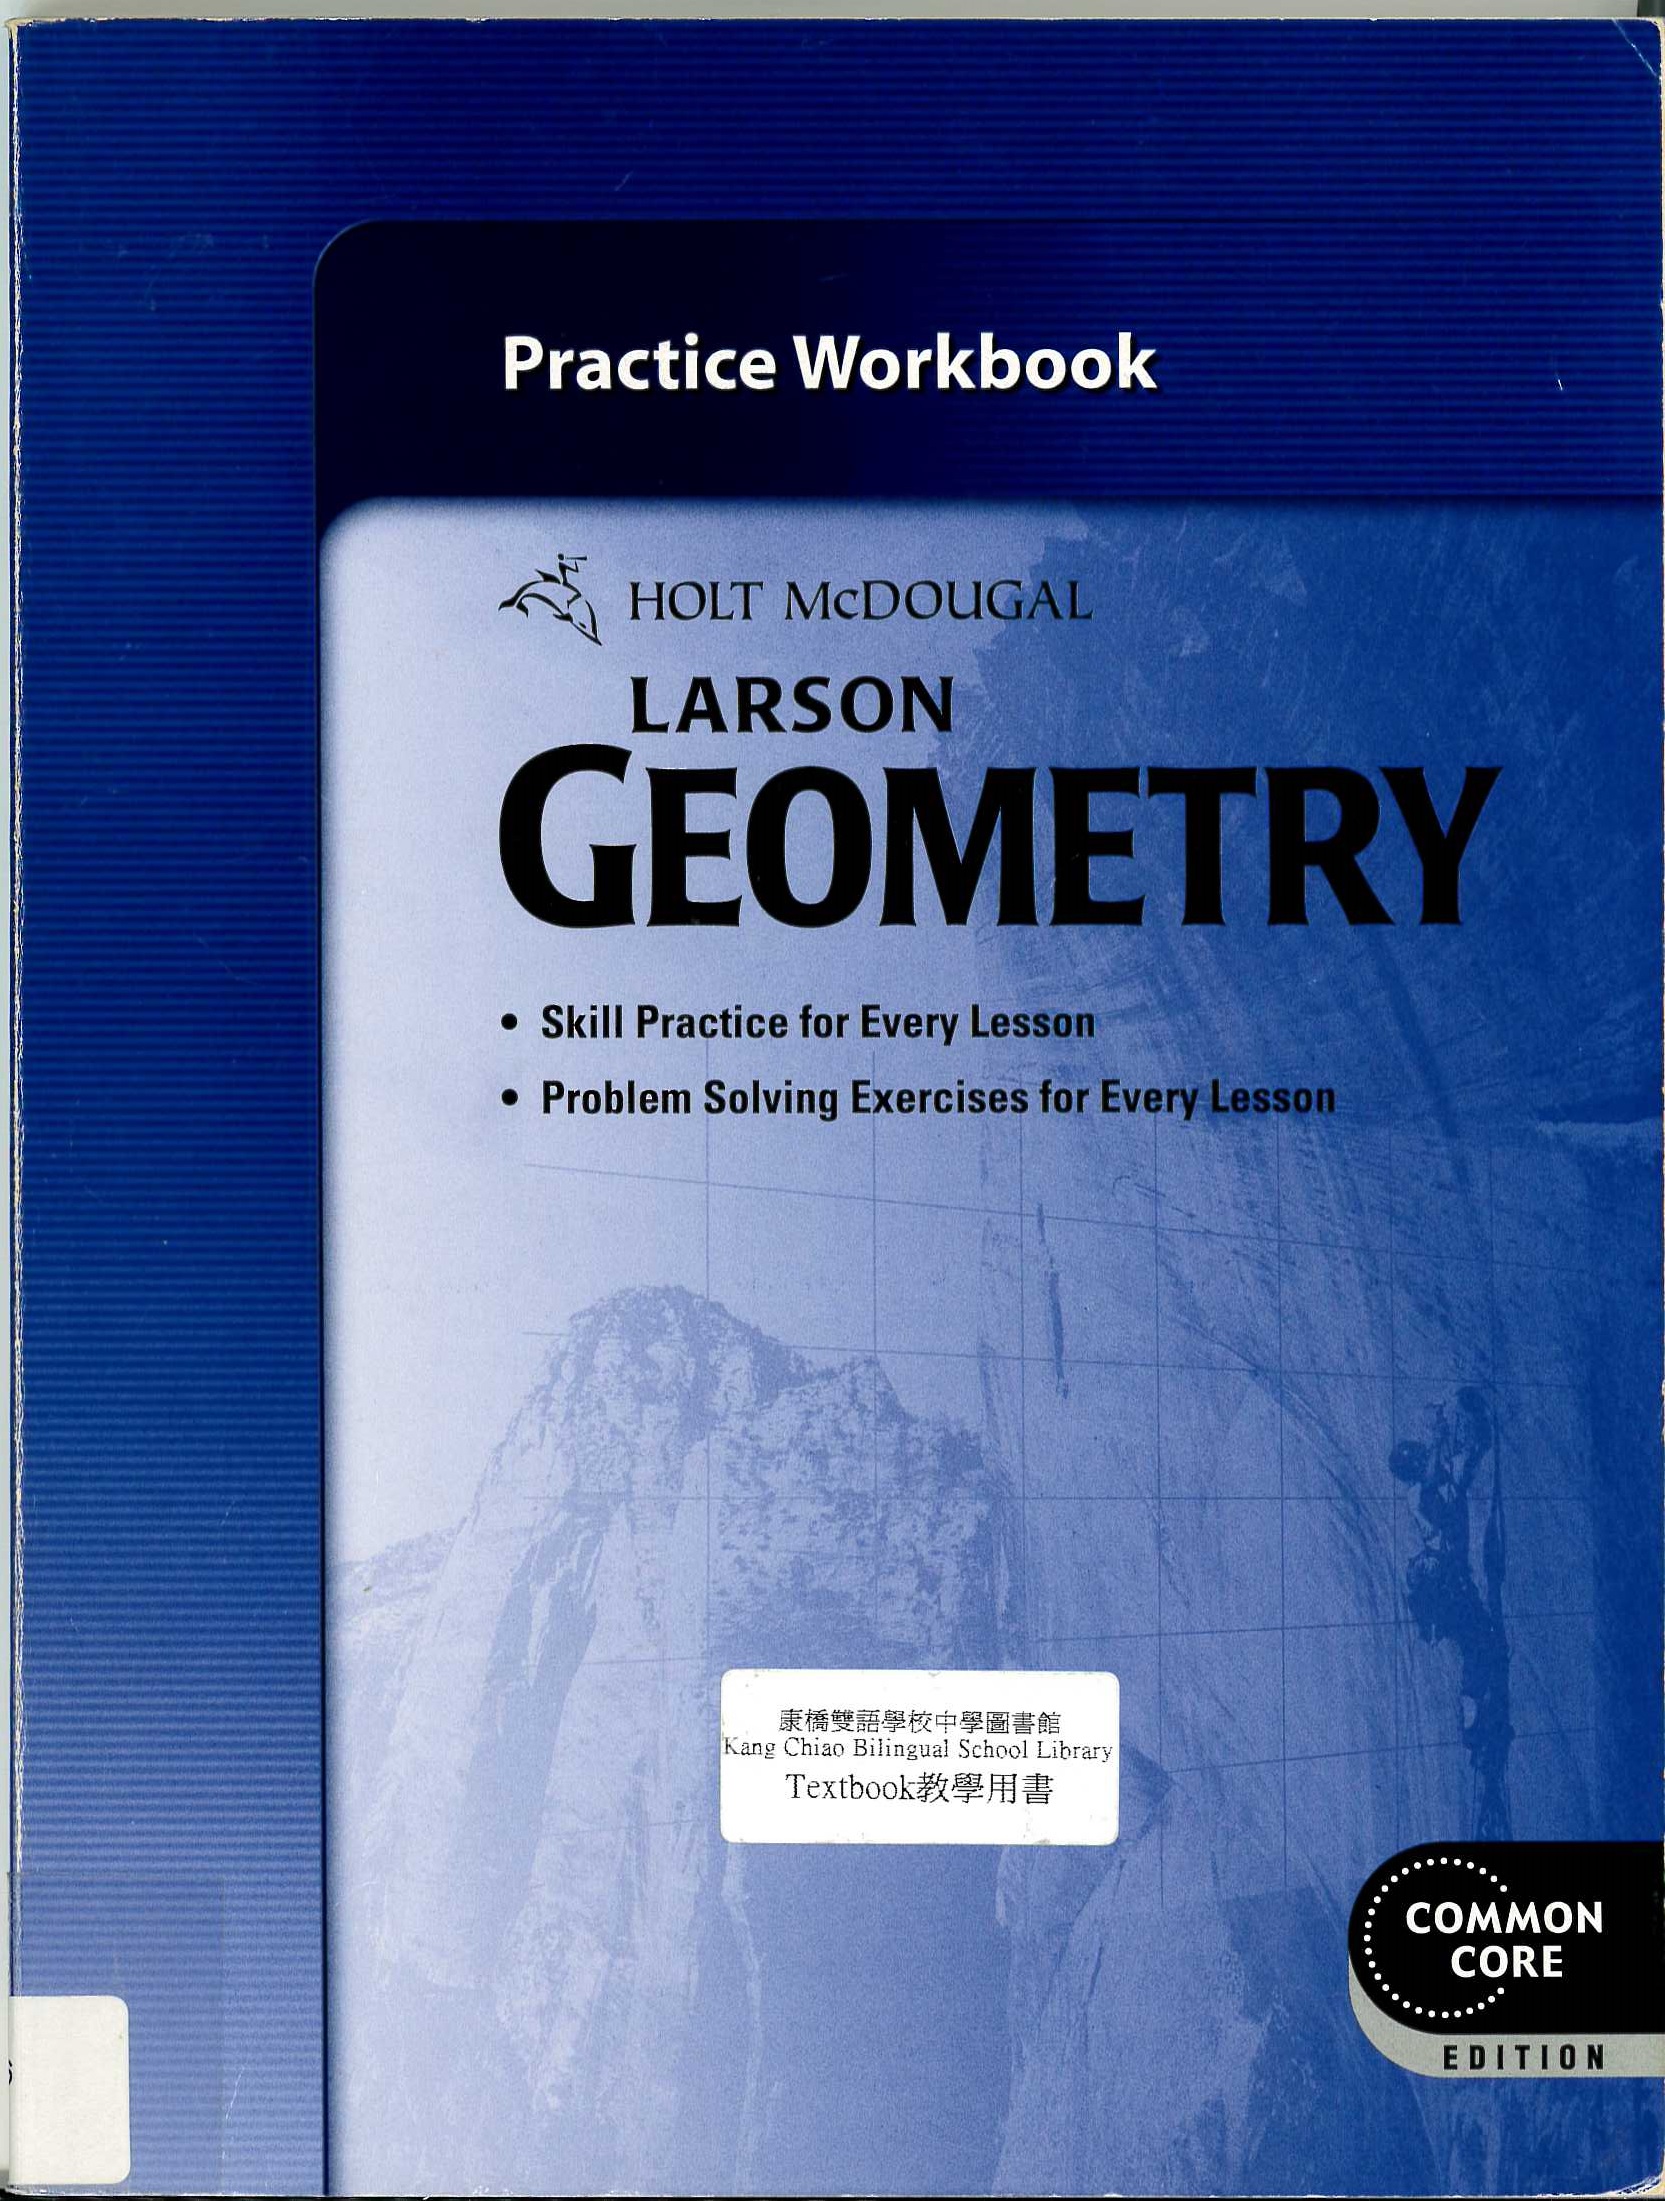 Holt McDougal geometry : practice workbook.